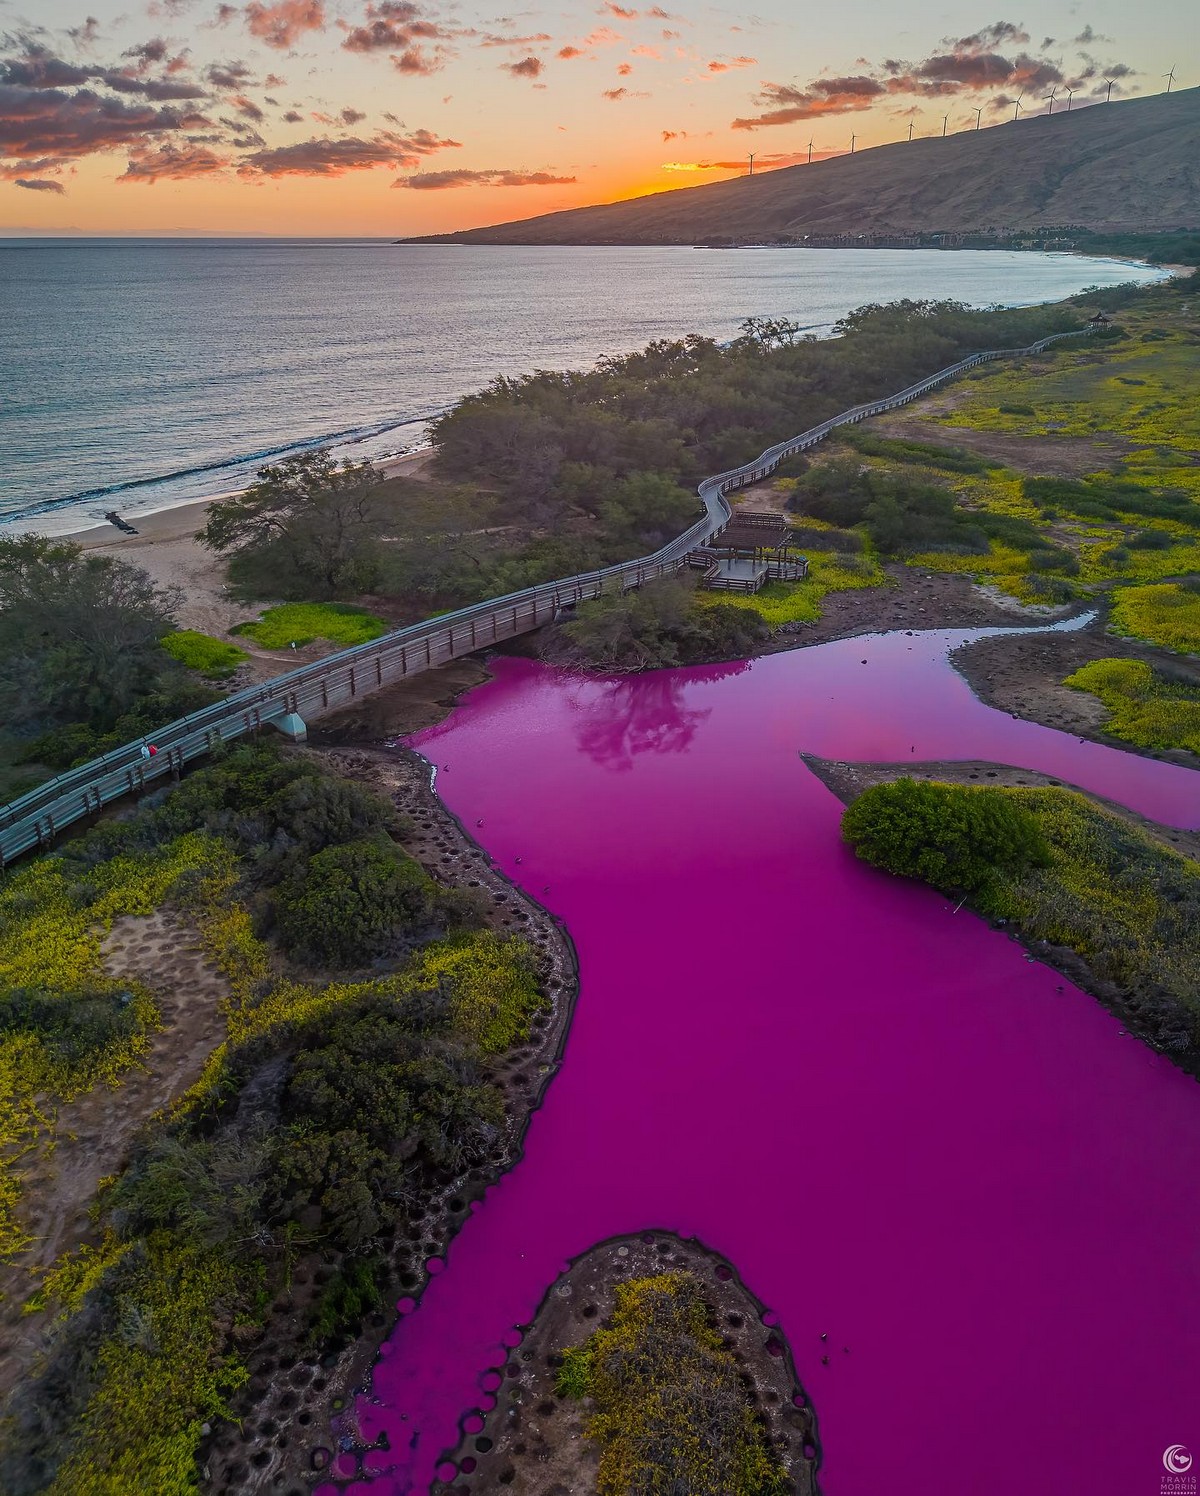 Kealia Shoreline, Kauai, Hawaii, Гавайи. Кеалий. Водоем который окрашивается в нежно розовый цвет